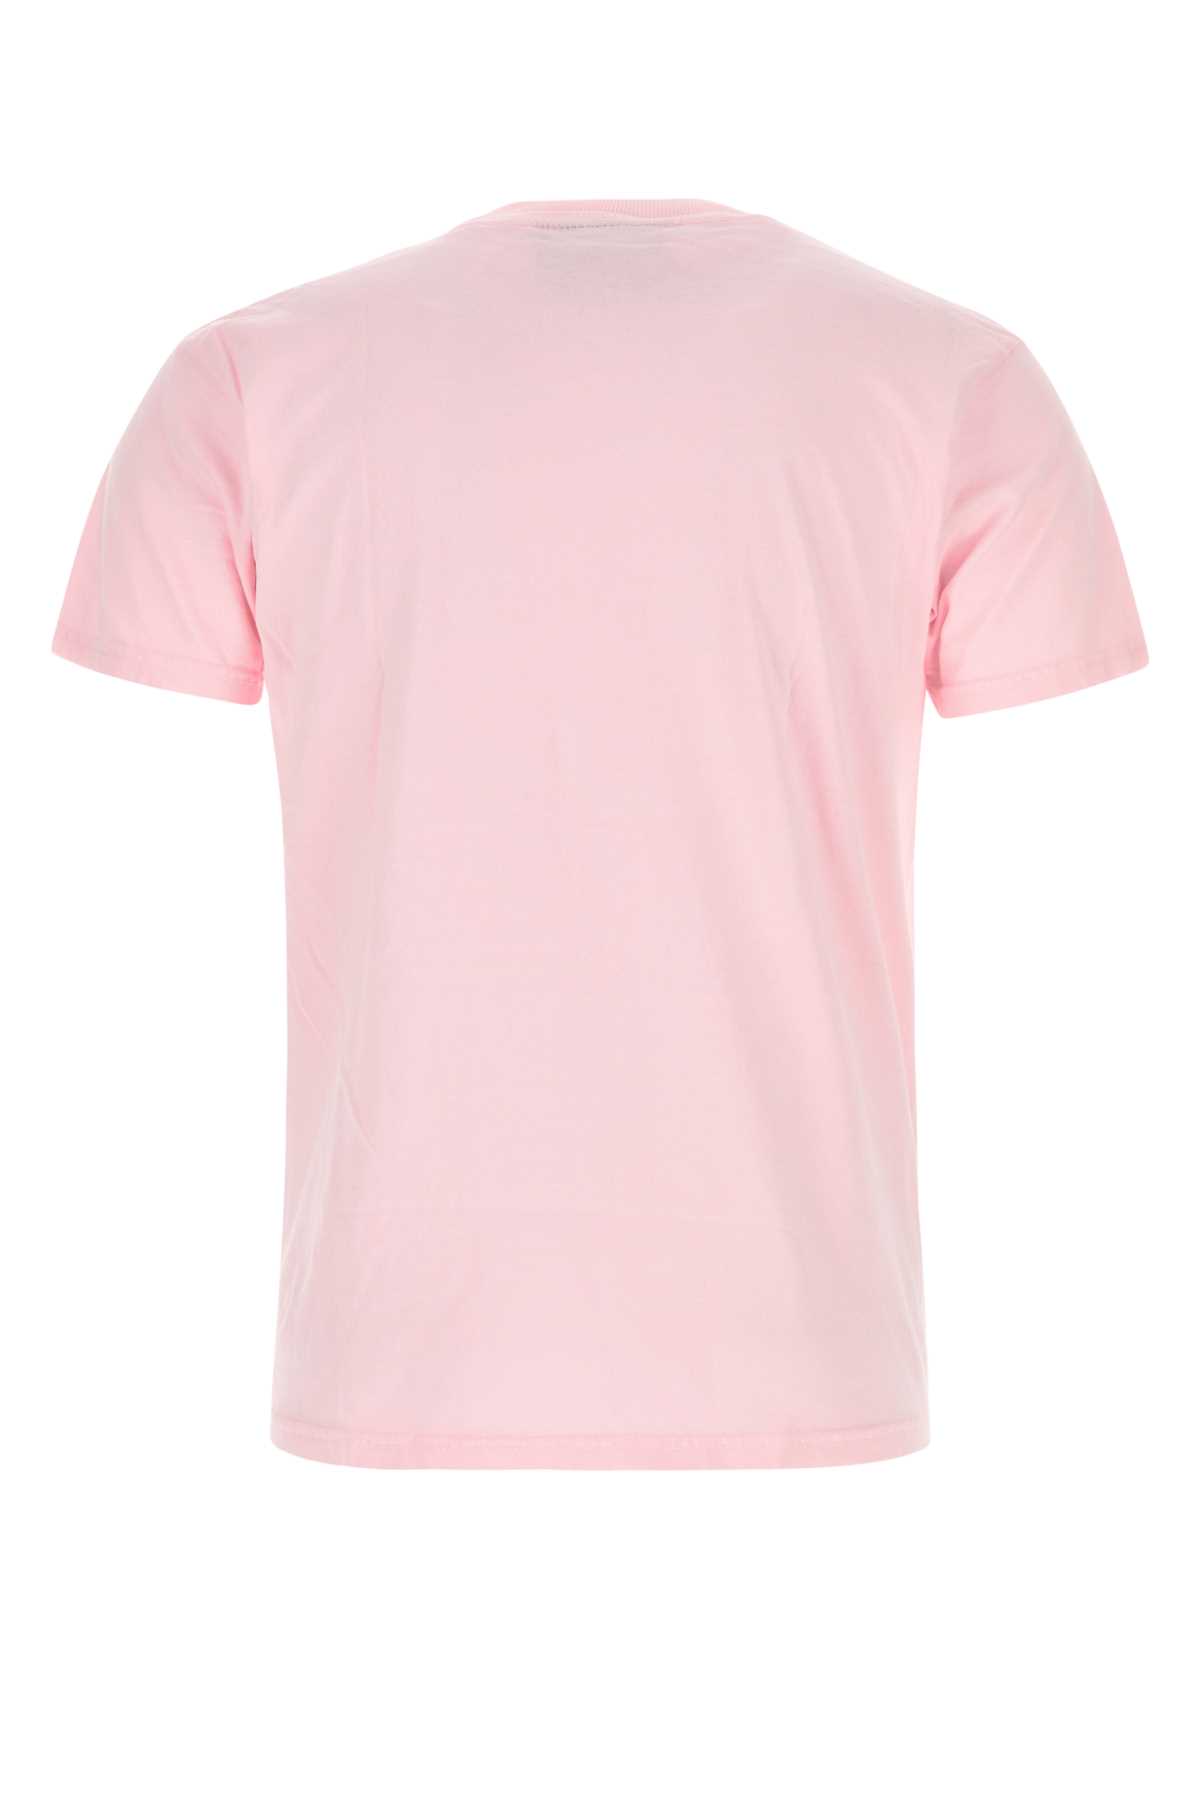 Kidsuper Pink Cotton T-shirt In Aboypink